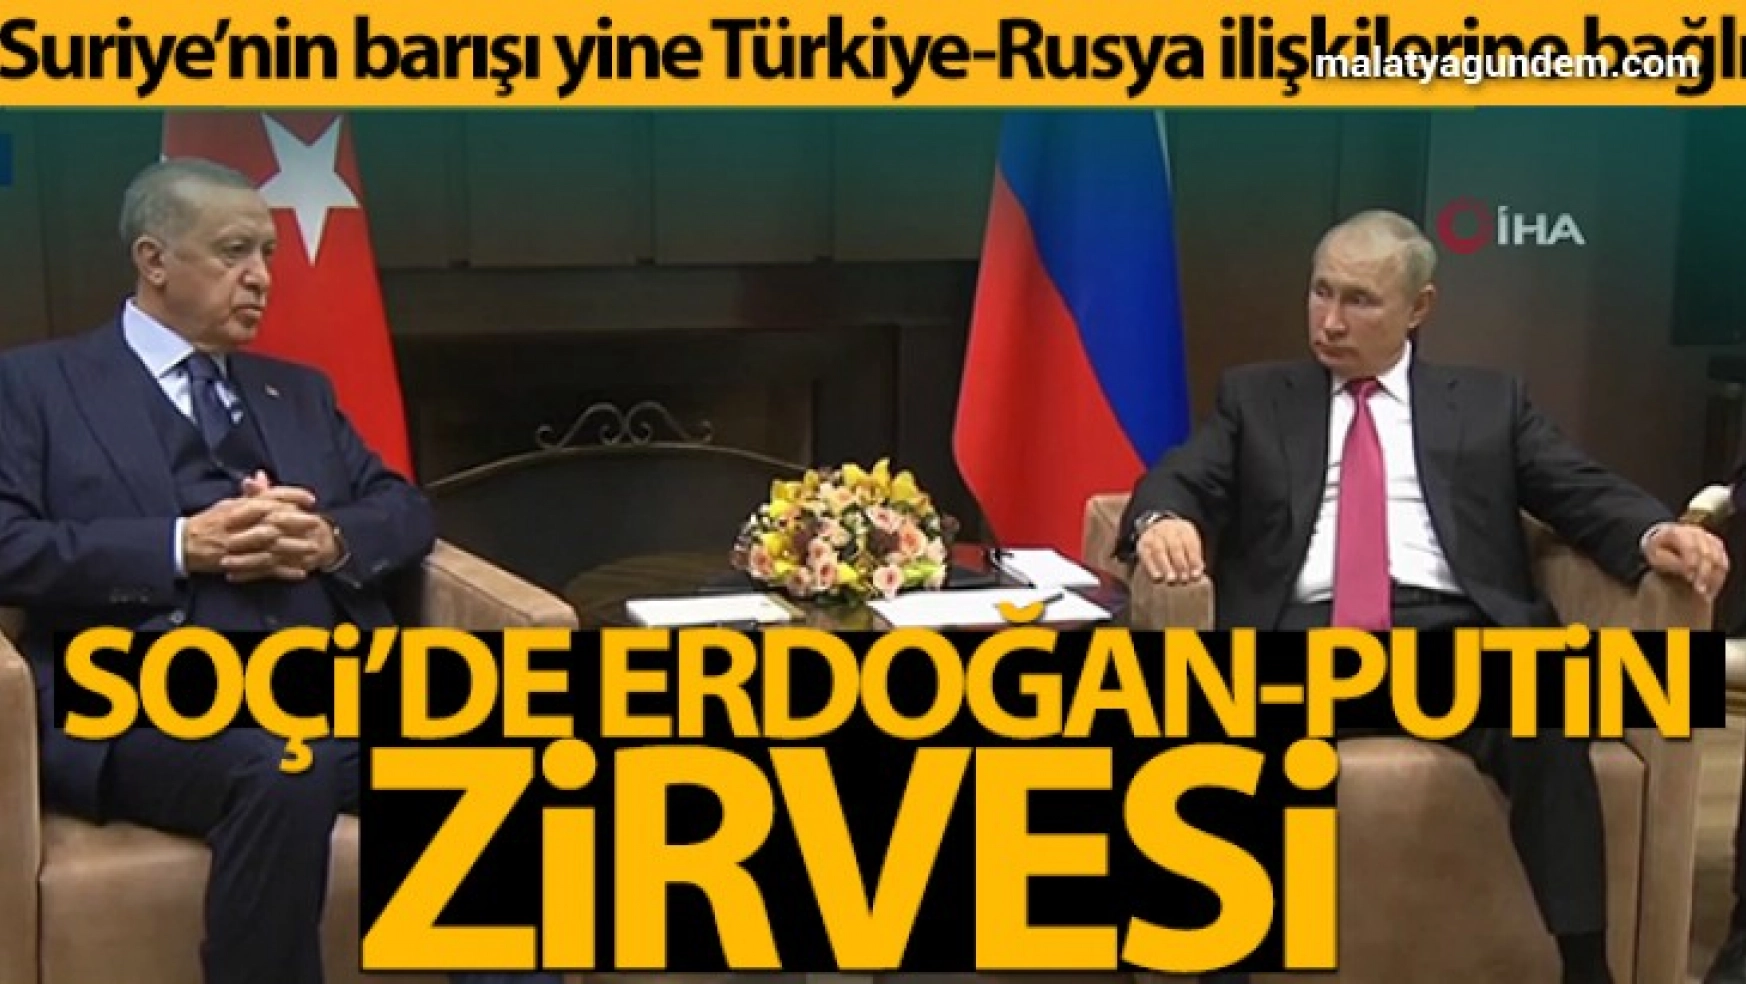 Cumhurbaşkanı Erdoğan: 'Suriye'nin barışı yine Türkiye-Rusya ilişkilerine bağlı'